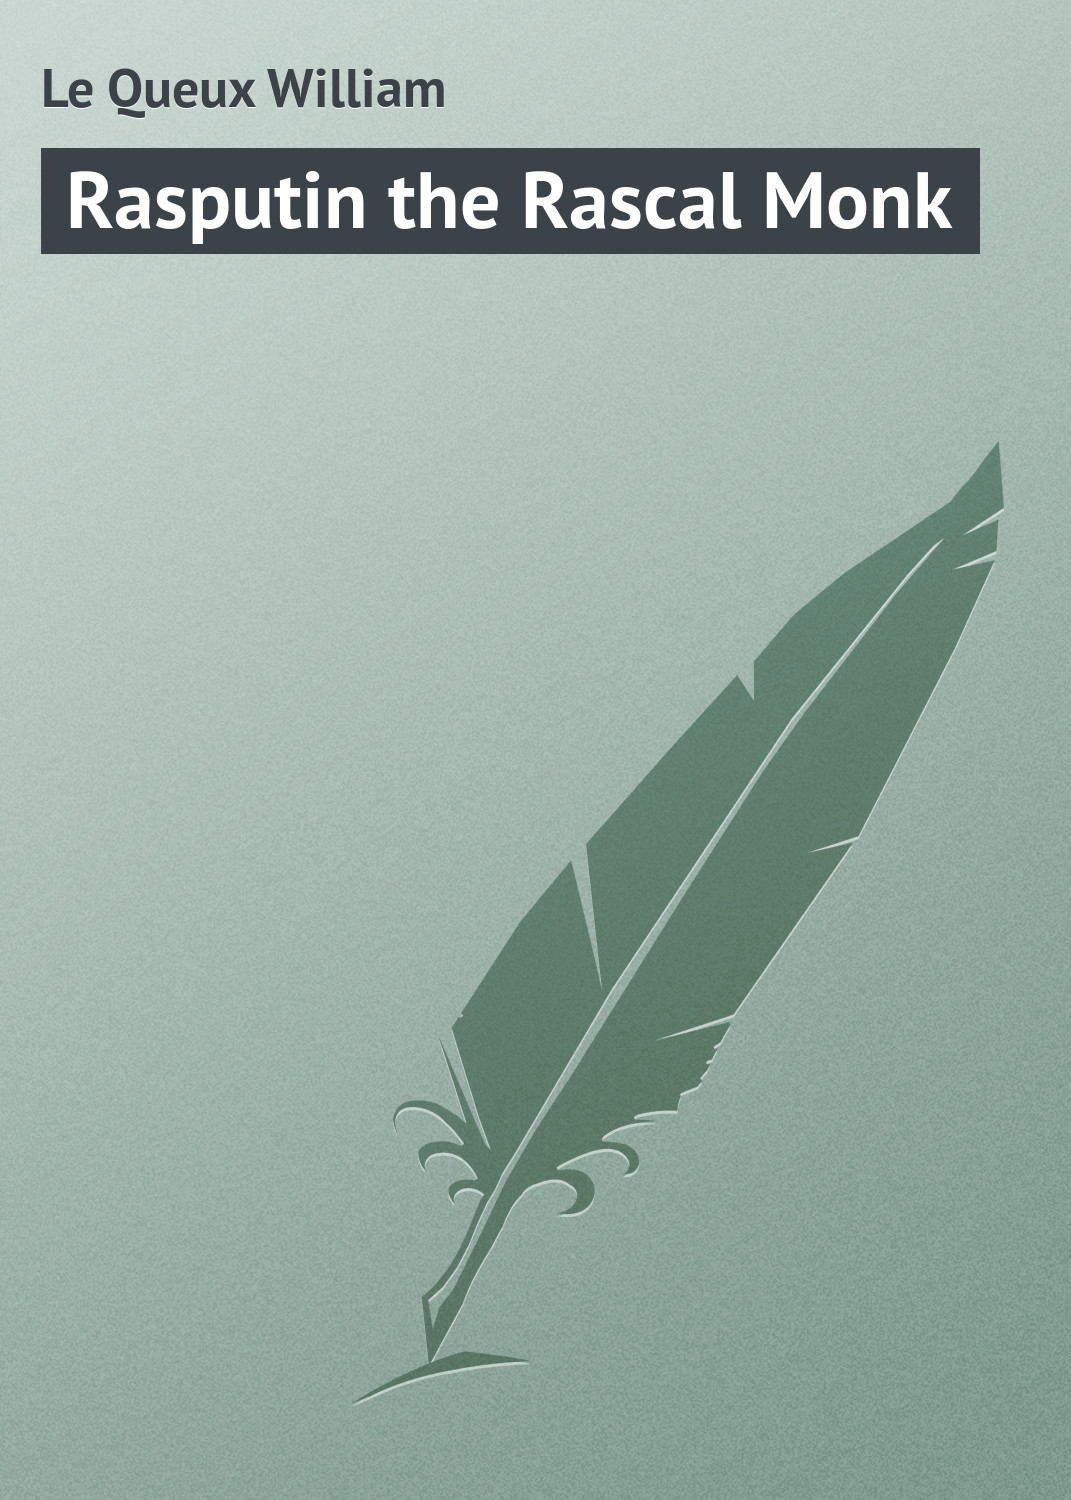 Книга Rasputin the Rascal Monk из серии , созданная William Le Queux, может относится к жанру Иностранные языки, Зарубежная классика. Стоимость электронной книги Rasputin the Rascal Monk с идентификатором 23162931 составляет 5.99 руб.